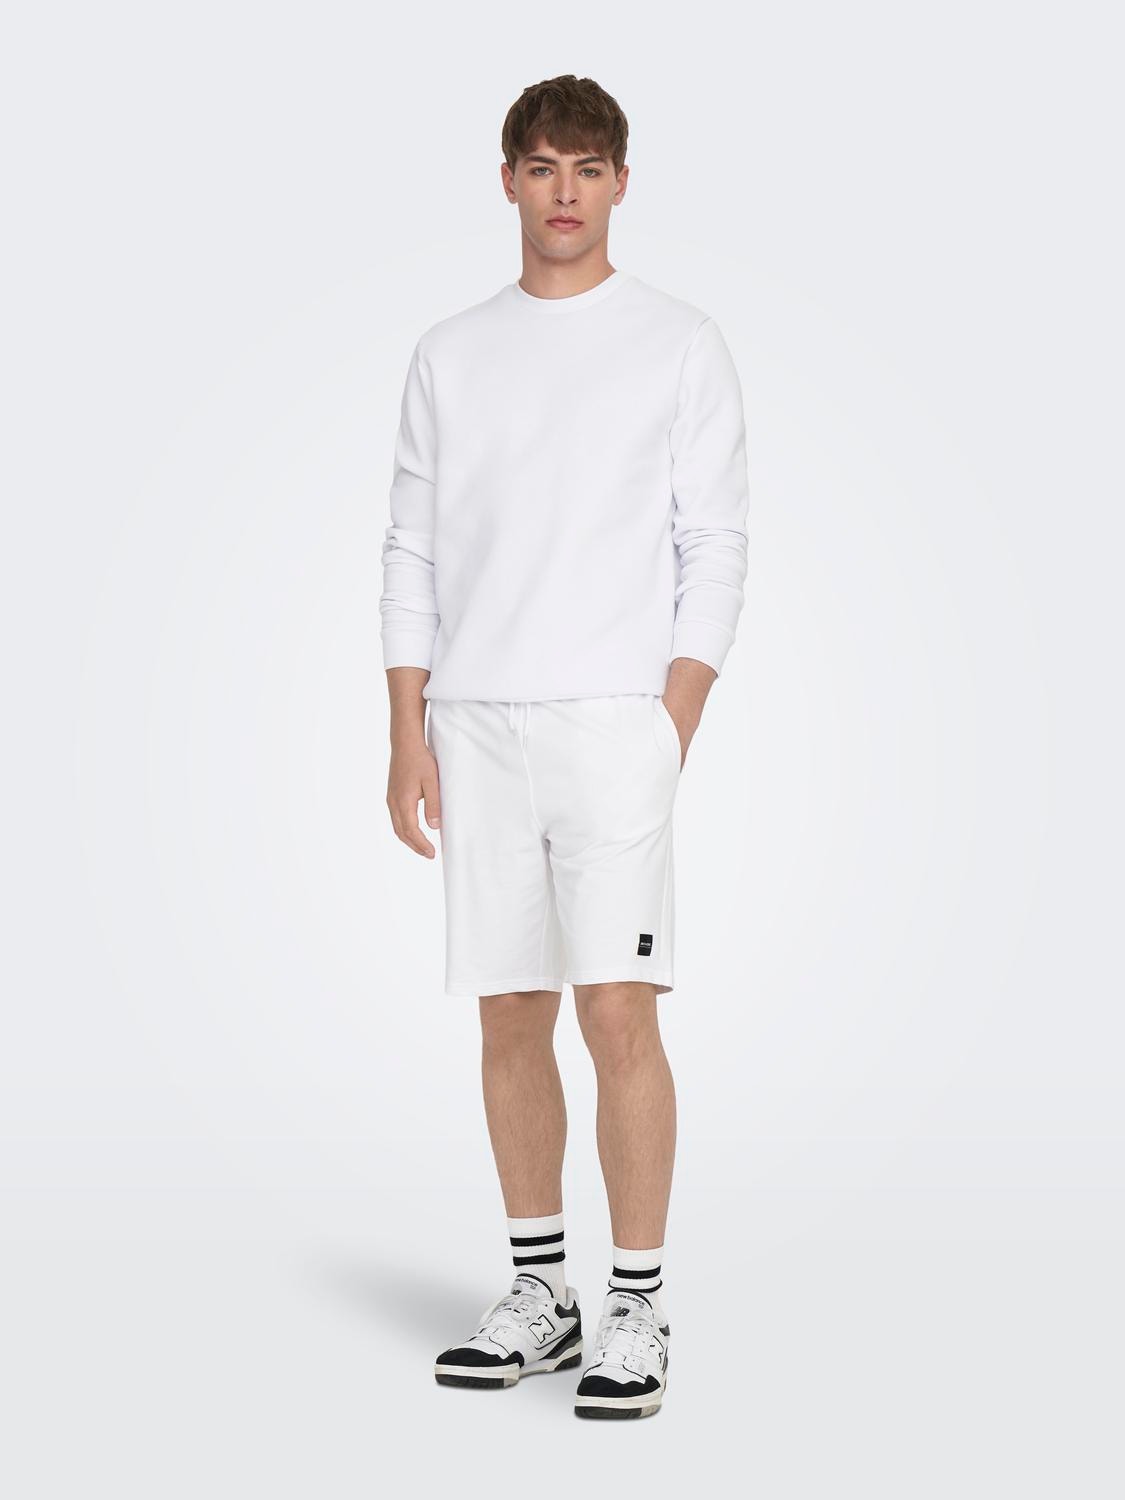 ONLY & SONS Normal geschnitten Rundhals Sweatshirt -Bright White - 22018683